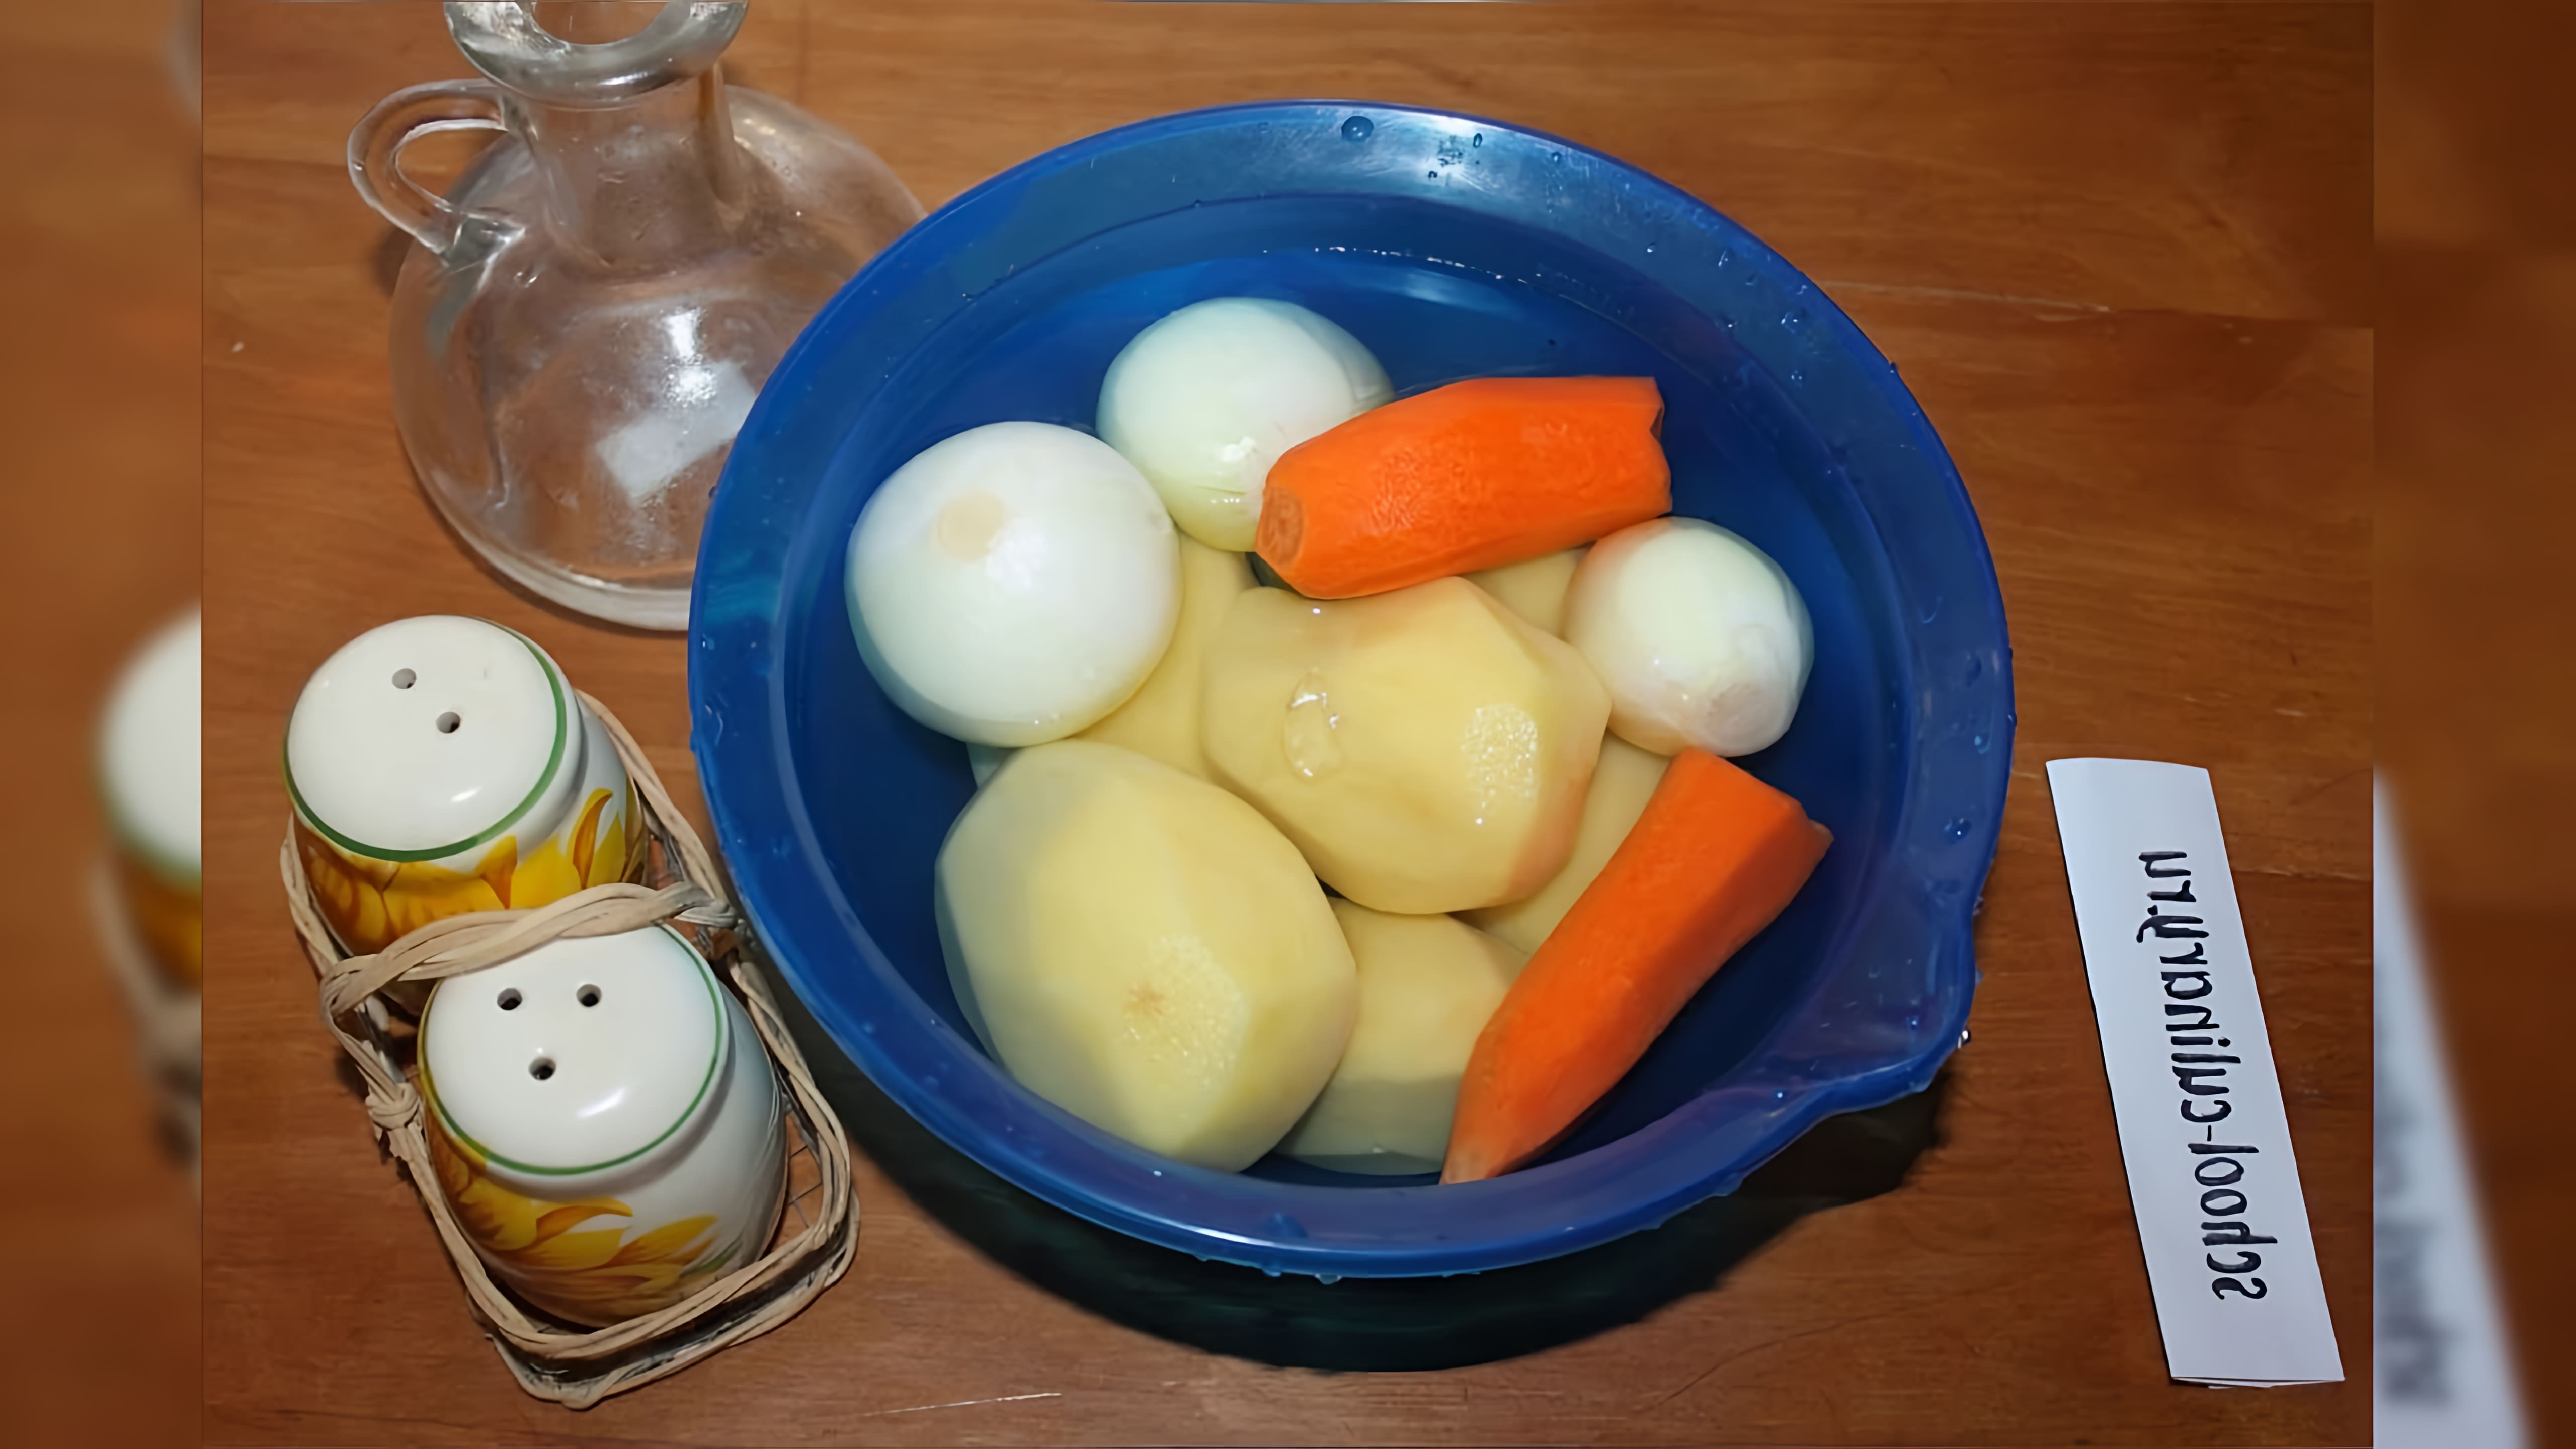 Жареная картошка с морковью и луком - это рецепт, который можно приготовить в домашних условиях